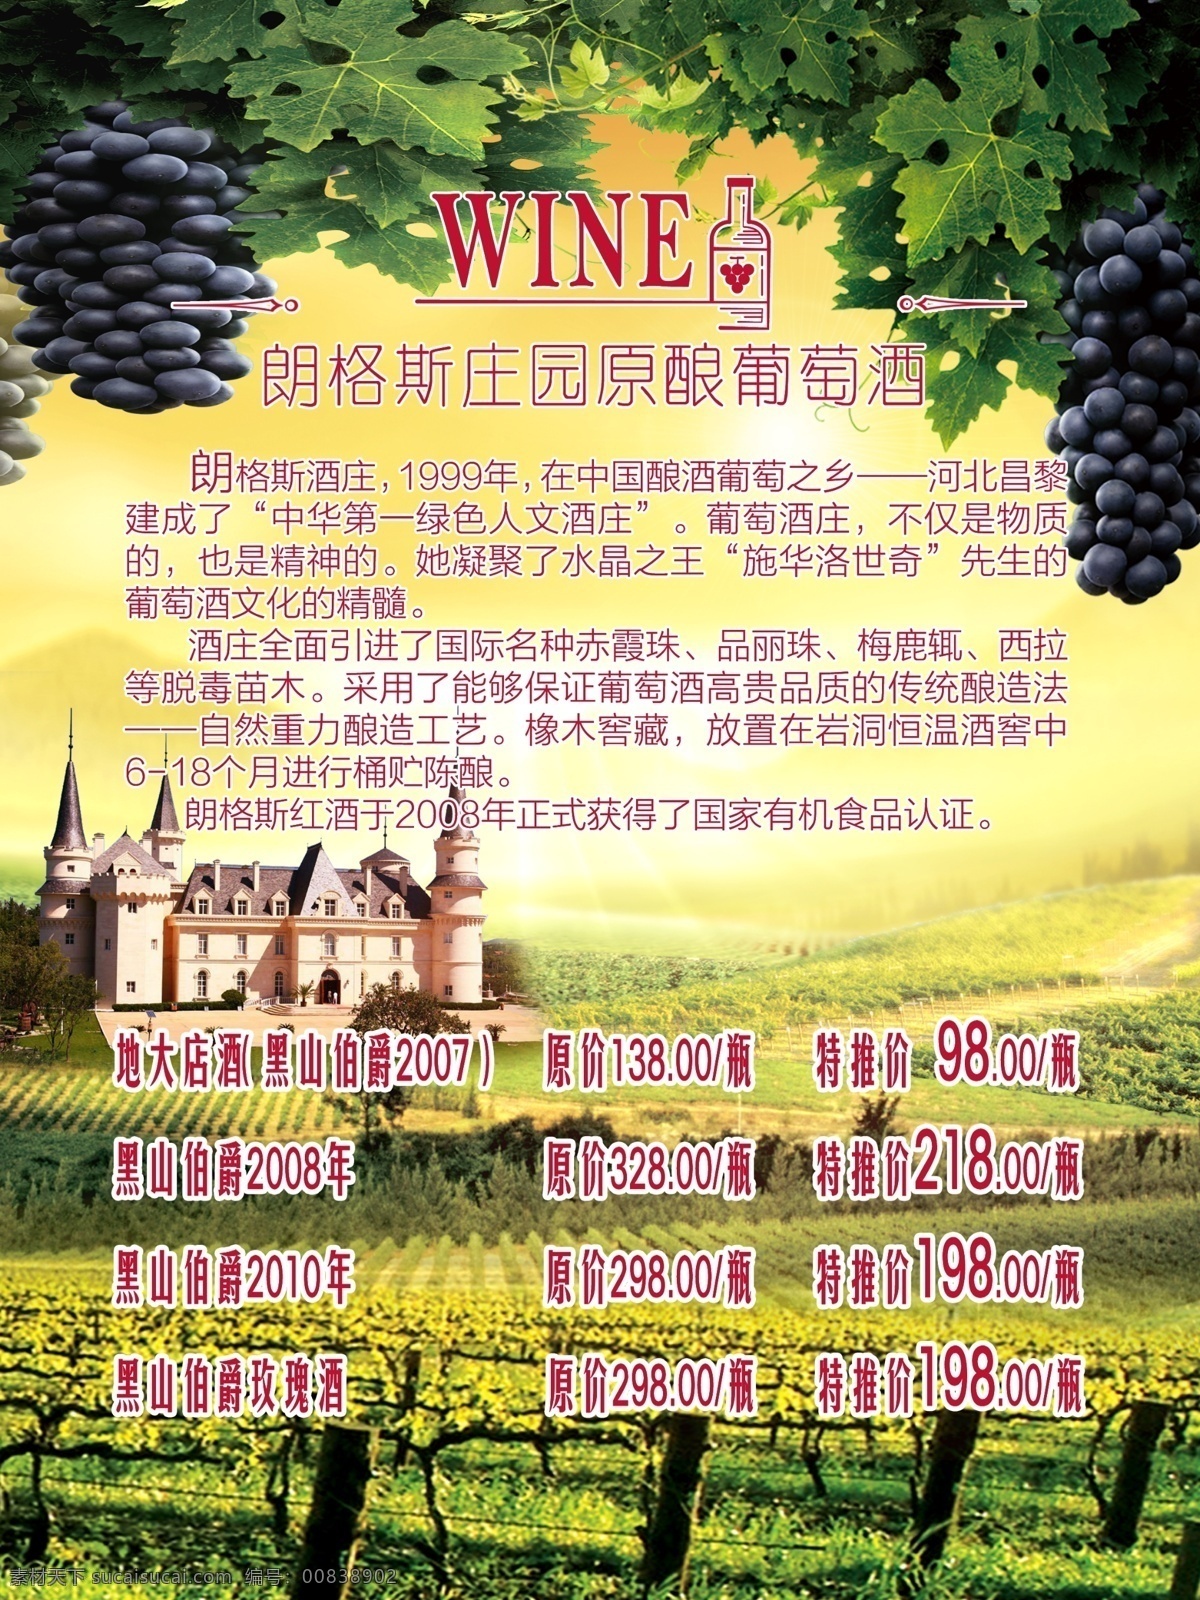 红酒海报 朗格斯 红酒 海报 餐饮 宣传 展板 葡萄 葡萄园 城堡 法国 酒庄